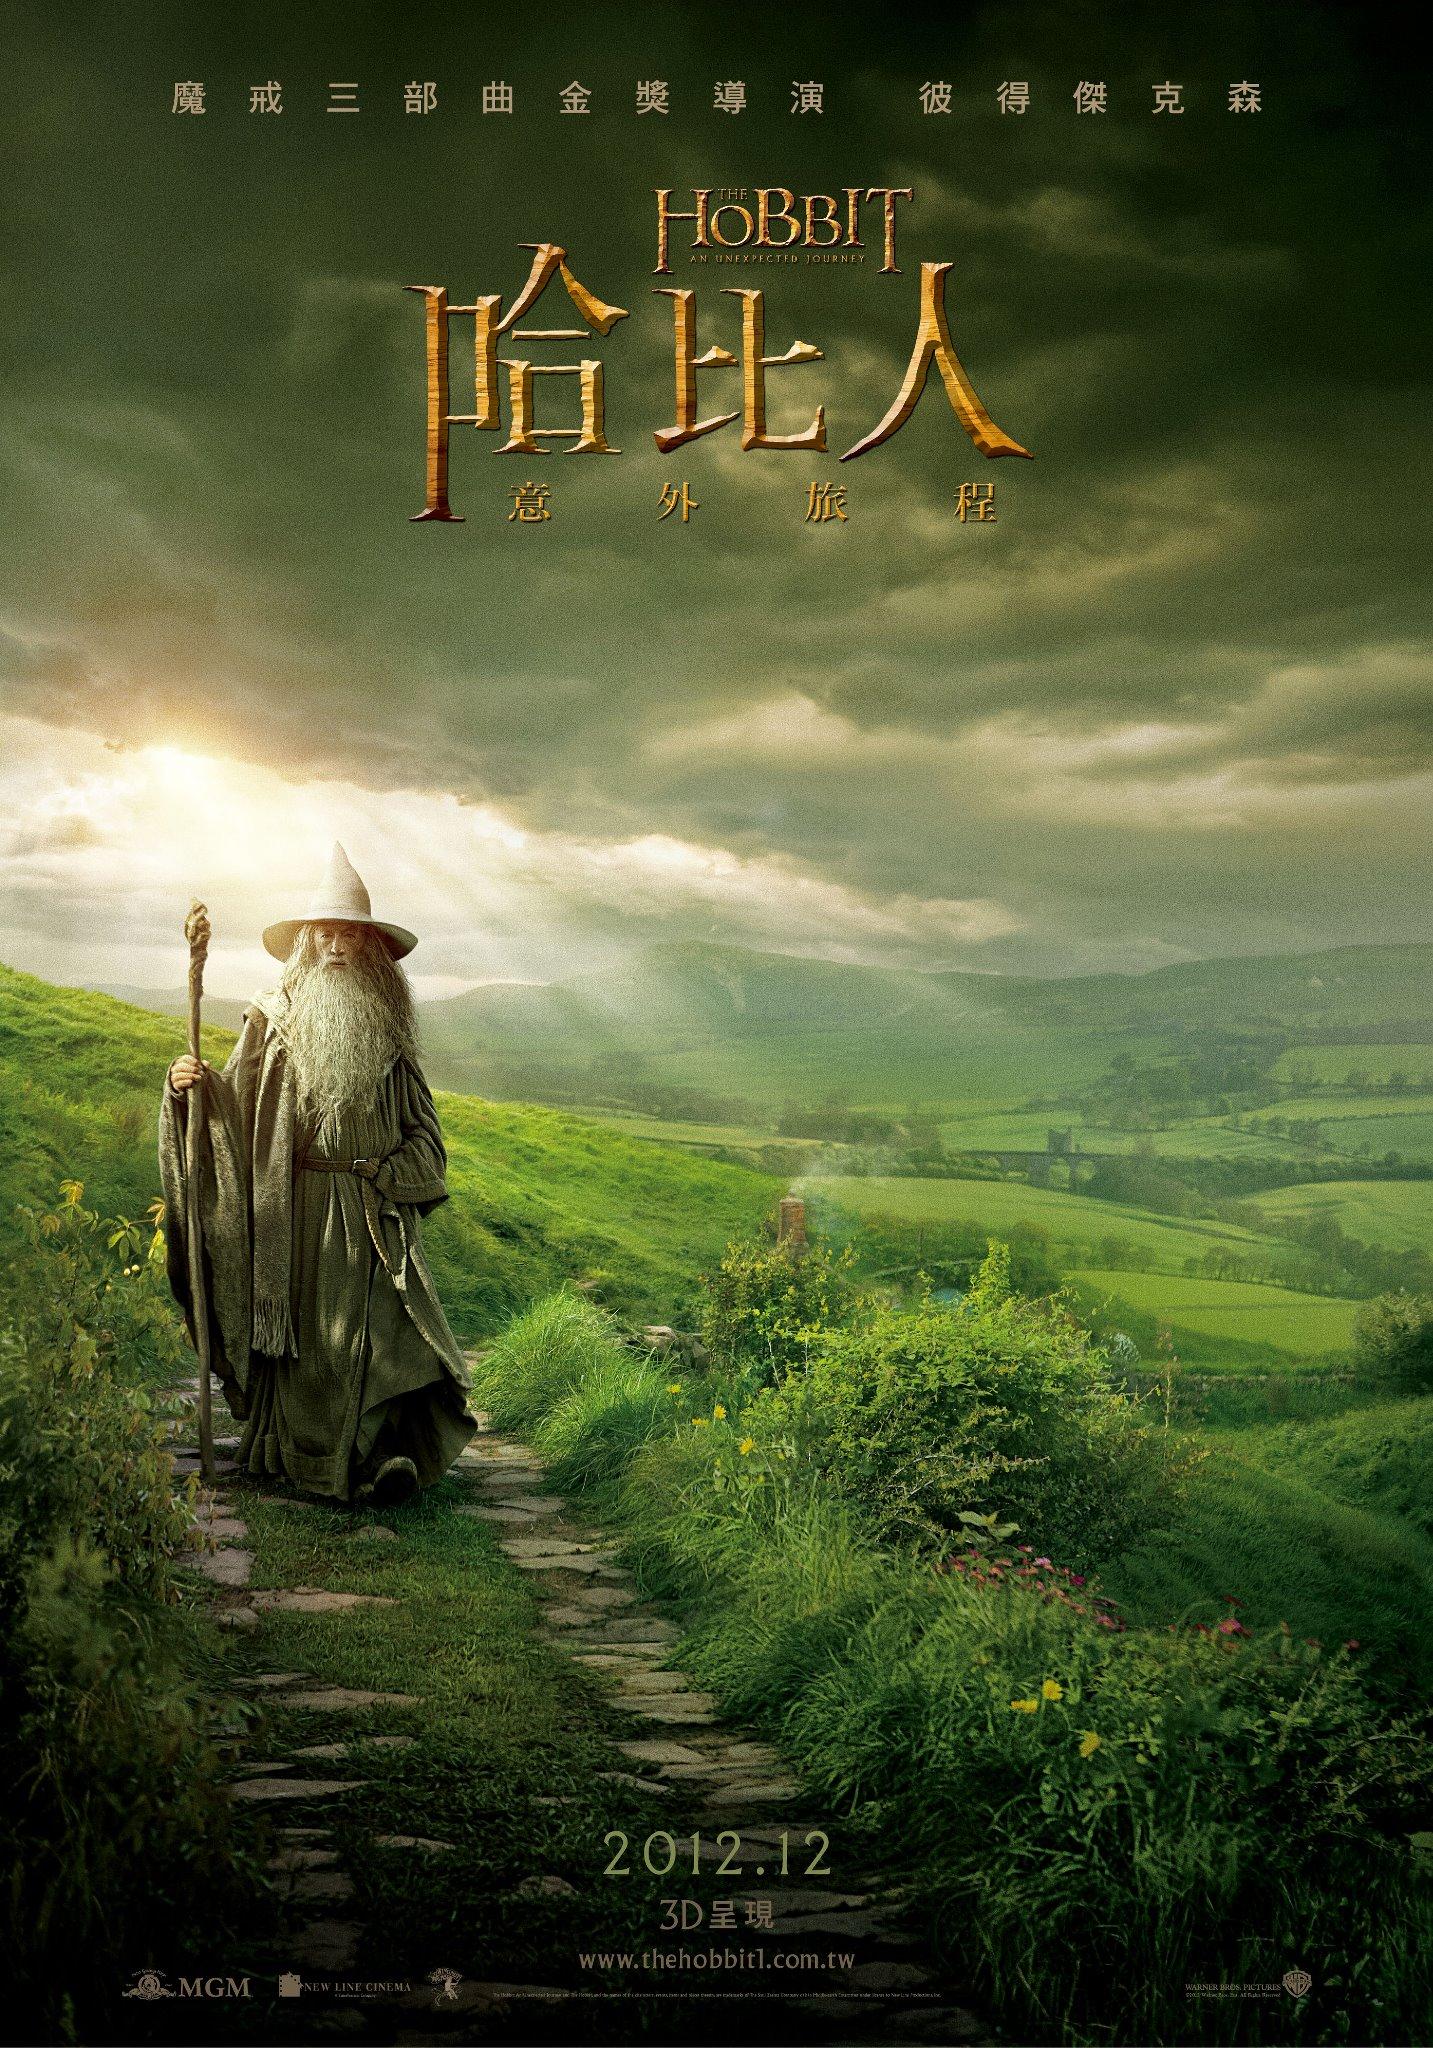 Постер фильма Хоббит: Нежданное путешествие | Hobbit: An Unexpected Journey